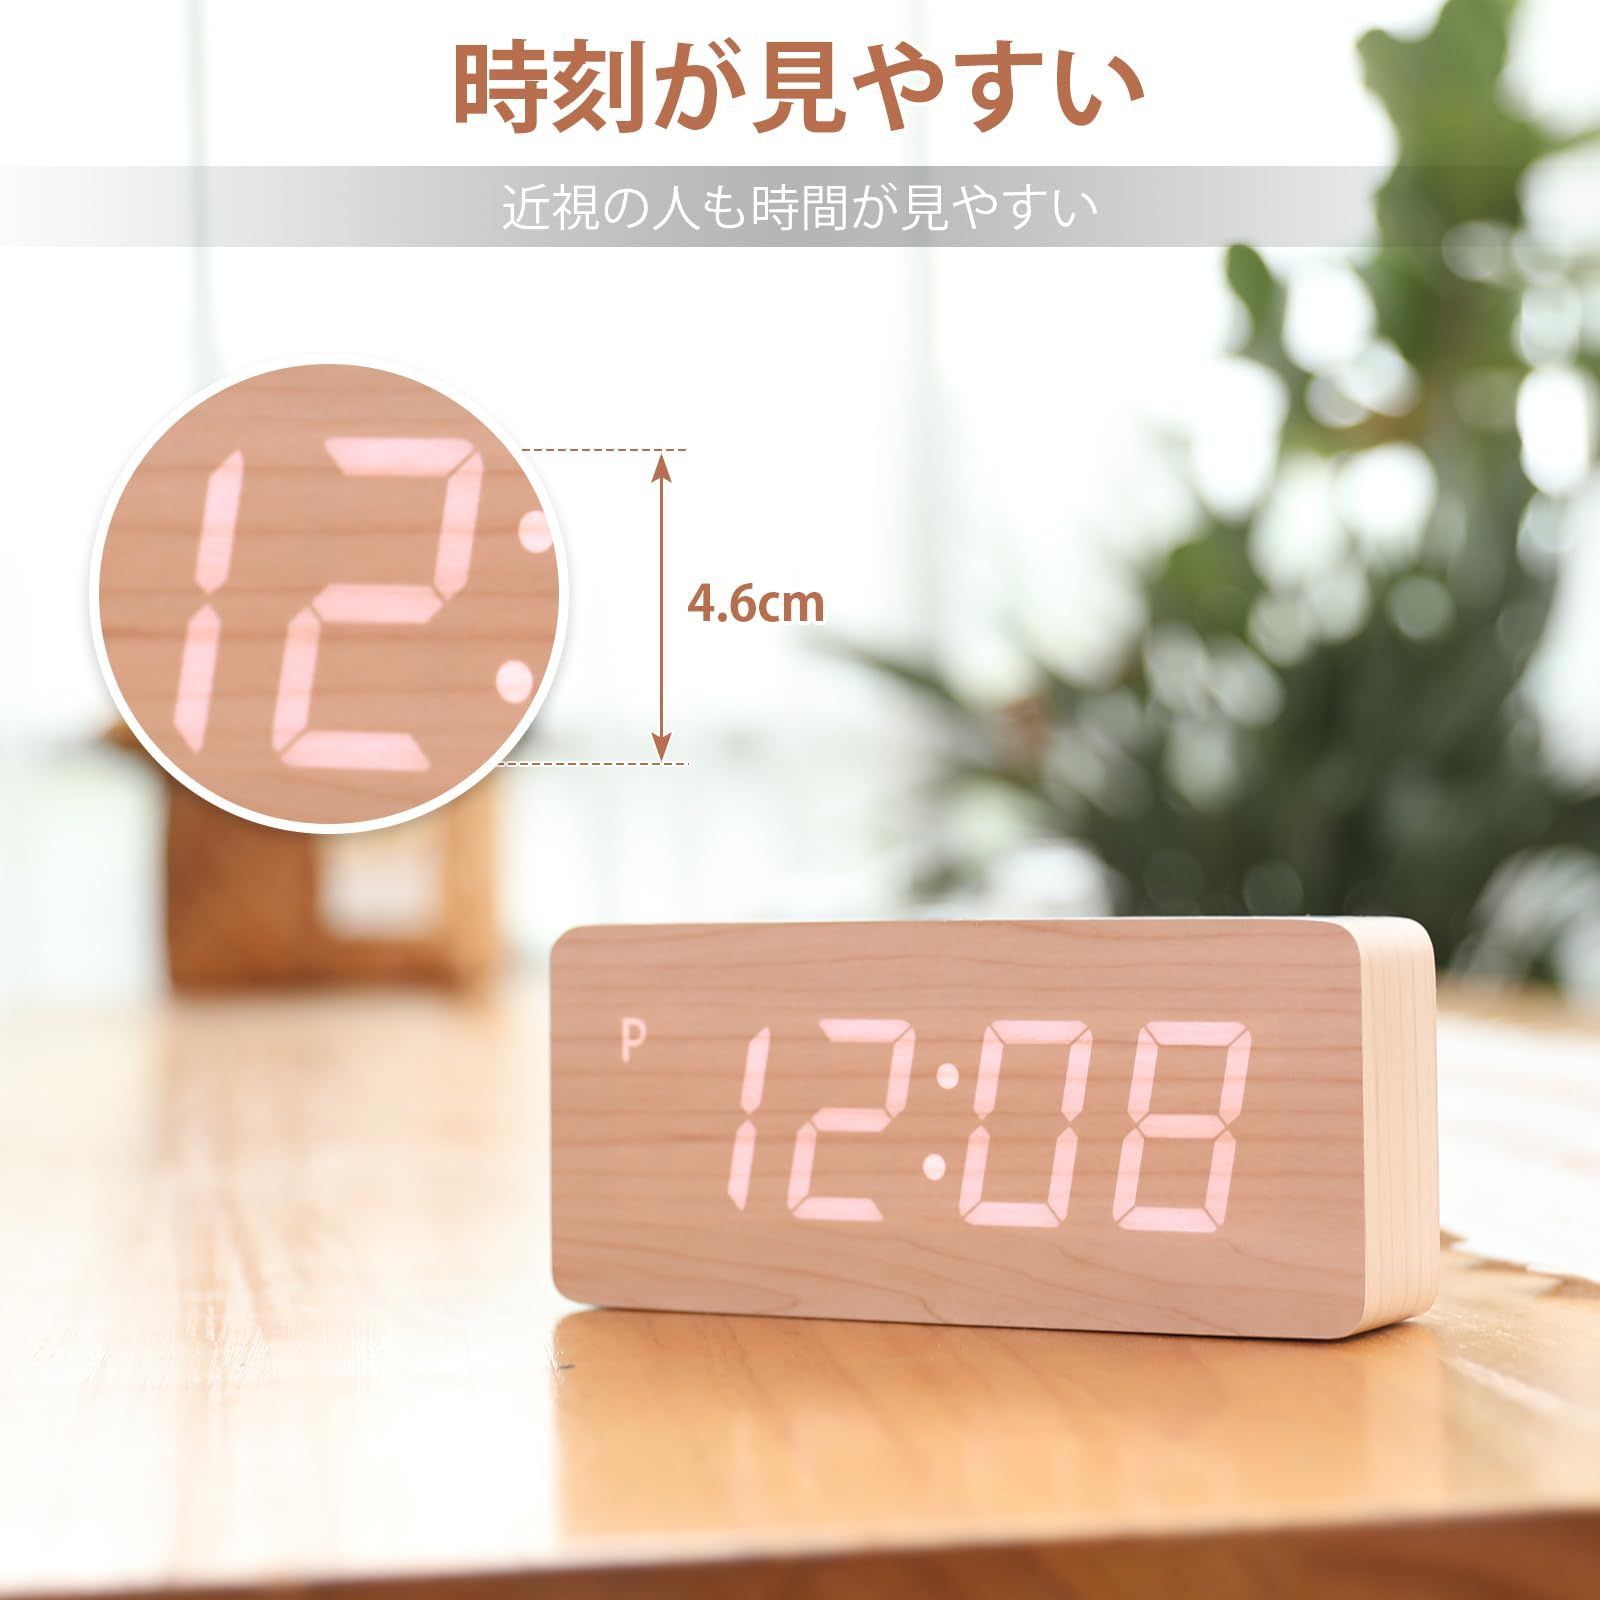 特価商品】デジタル目覚まし時計 木製置き時計 大型 LED時間表示3